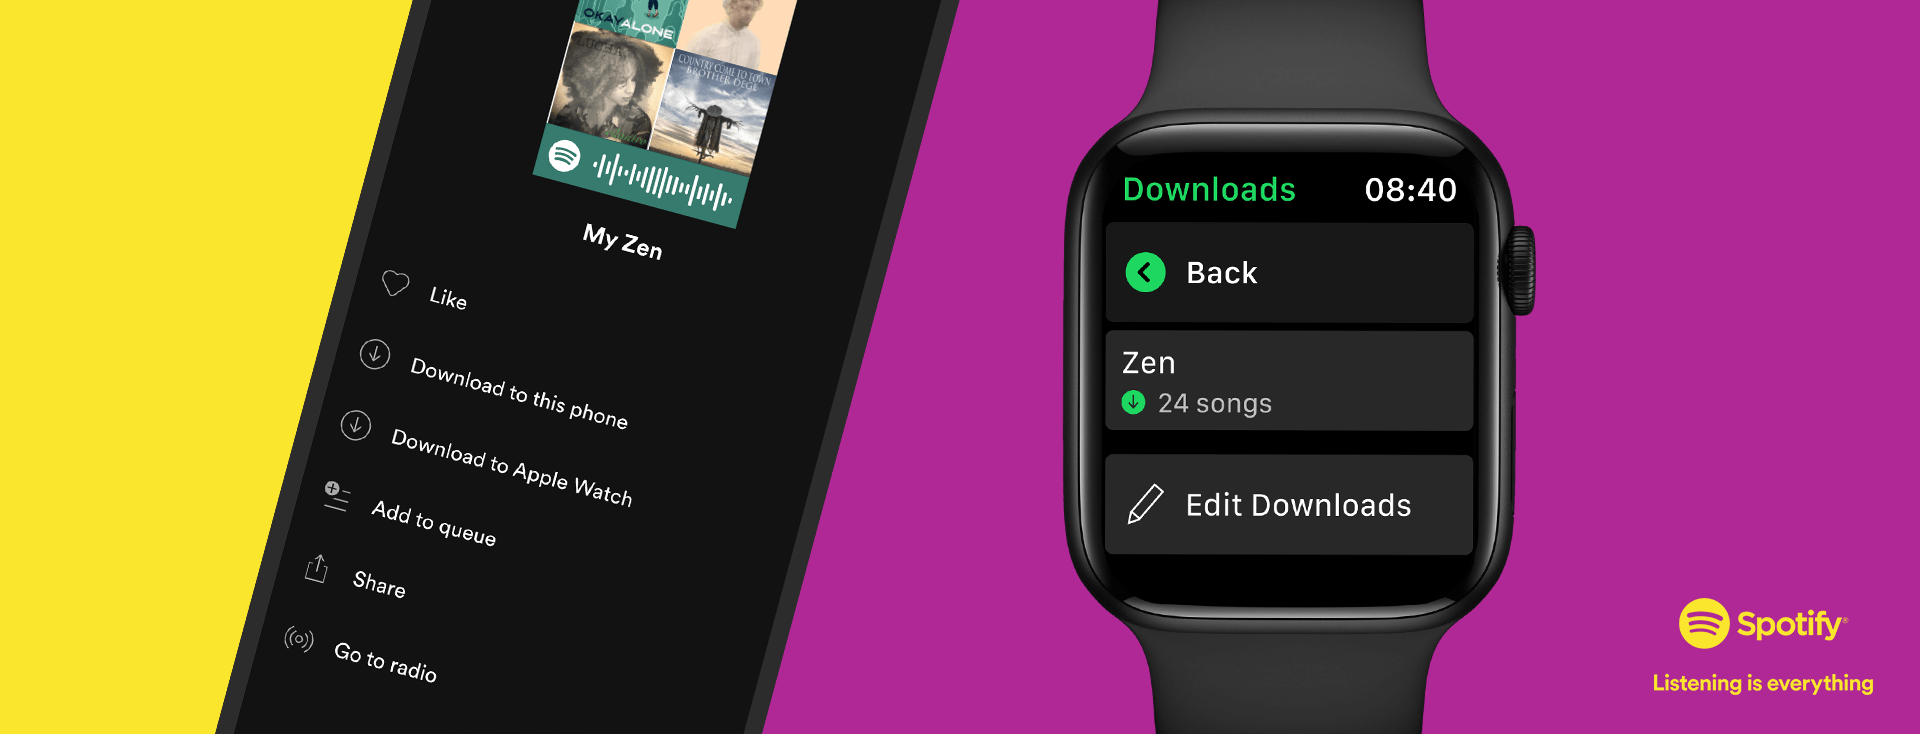 apple watch spotify pobieranie muzyki